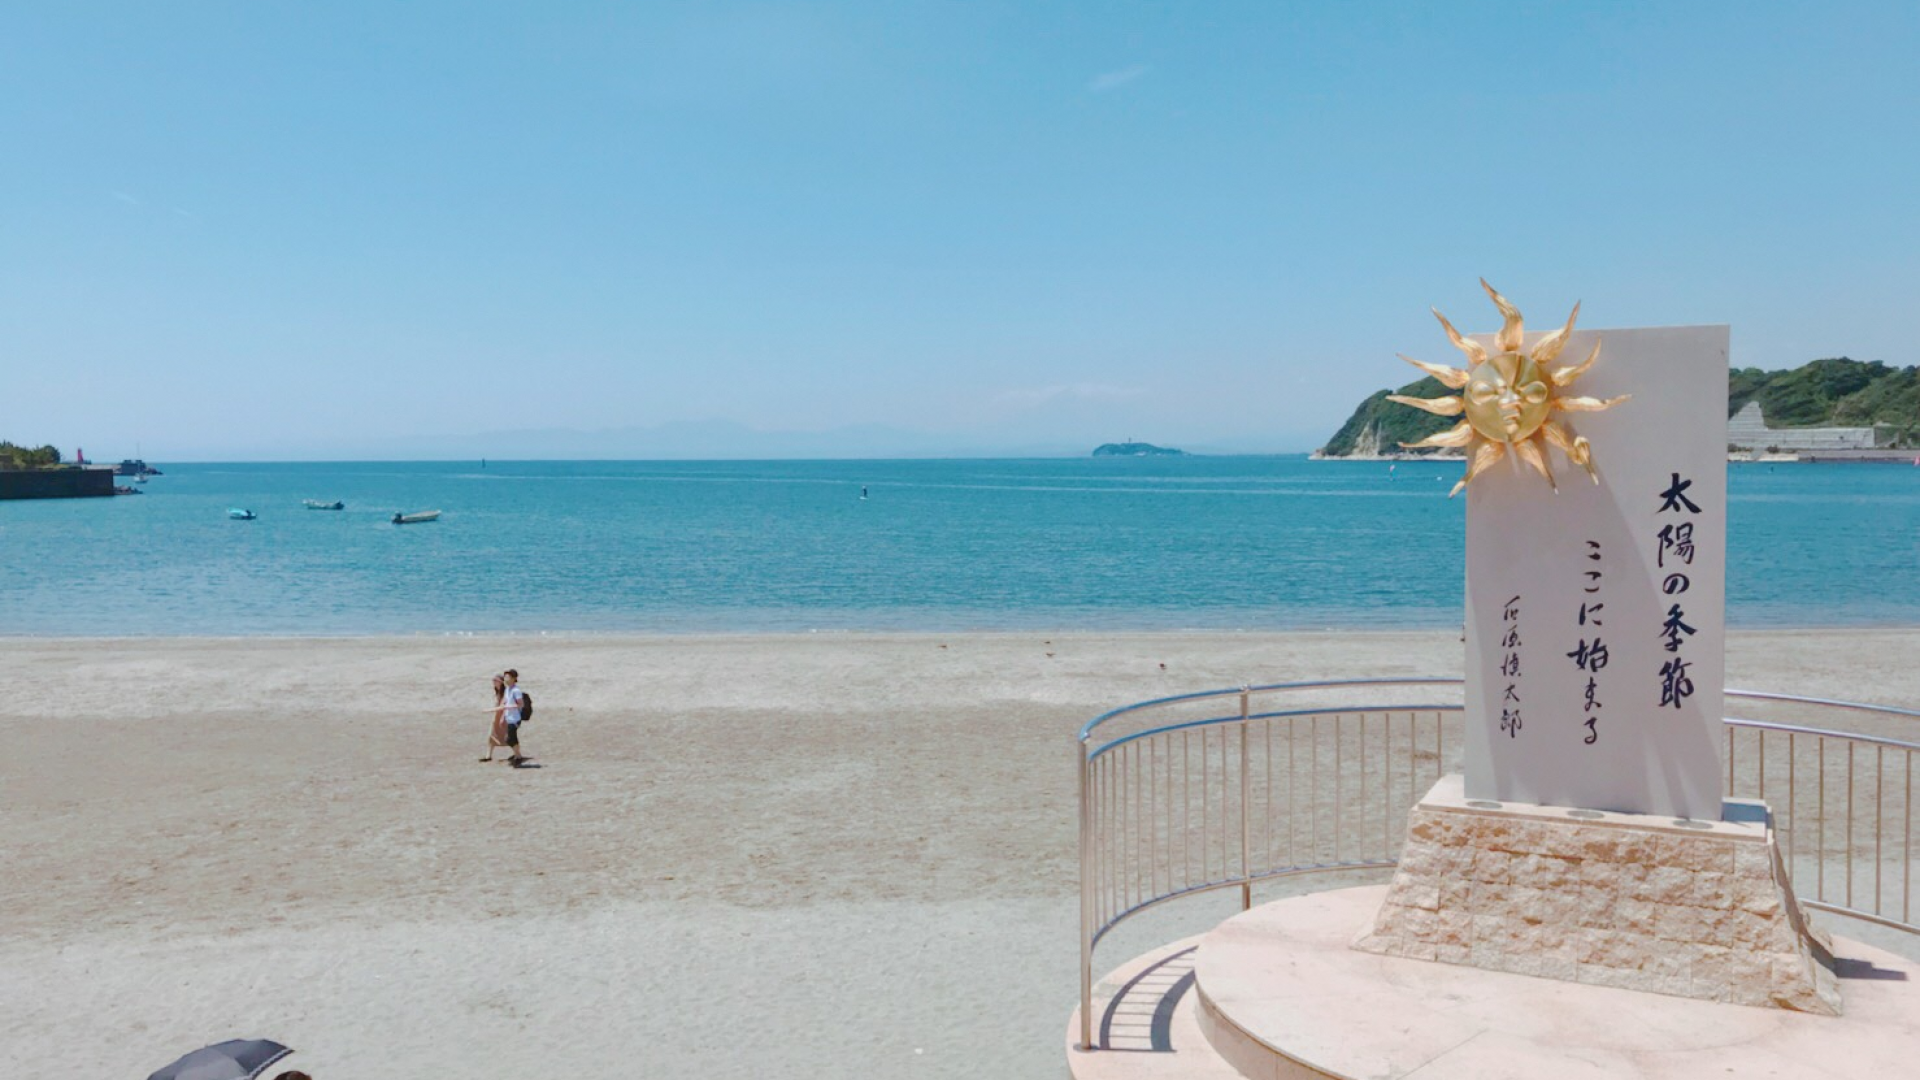 즈시 해변: "태양의 계절" 비석